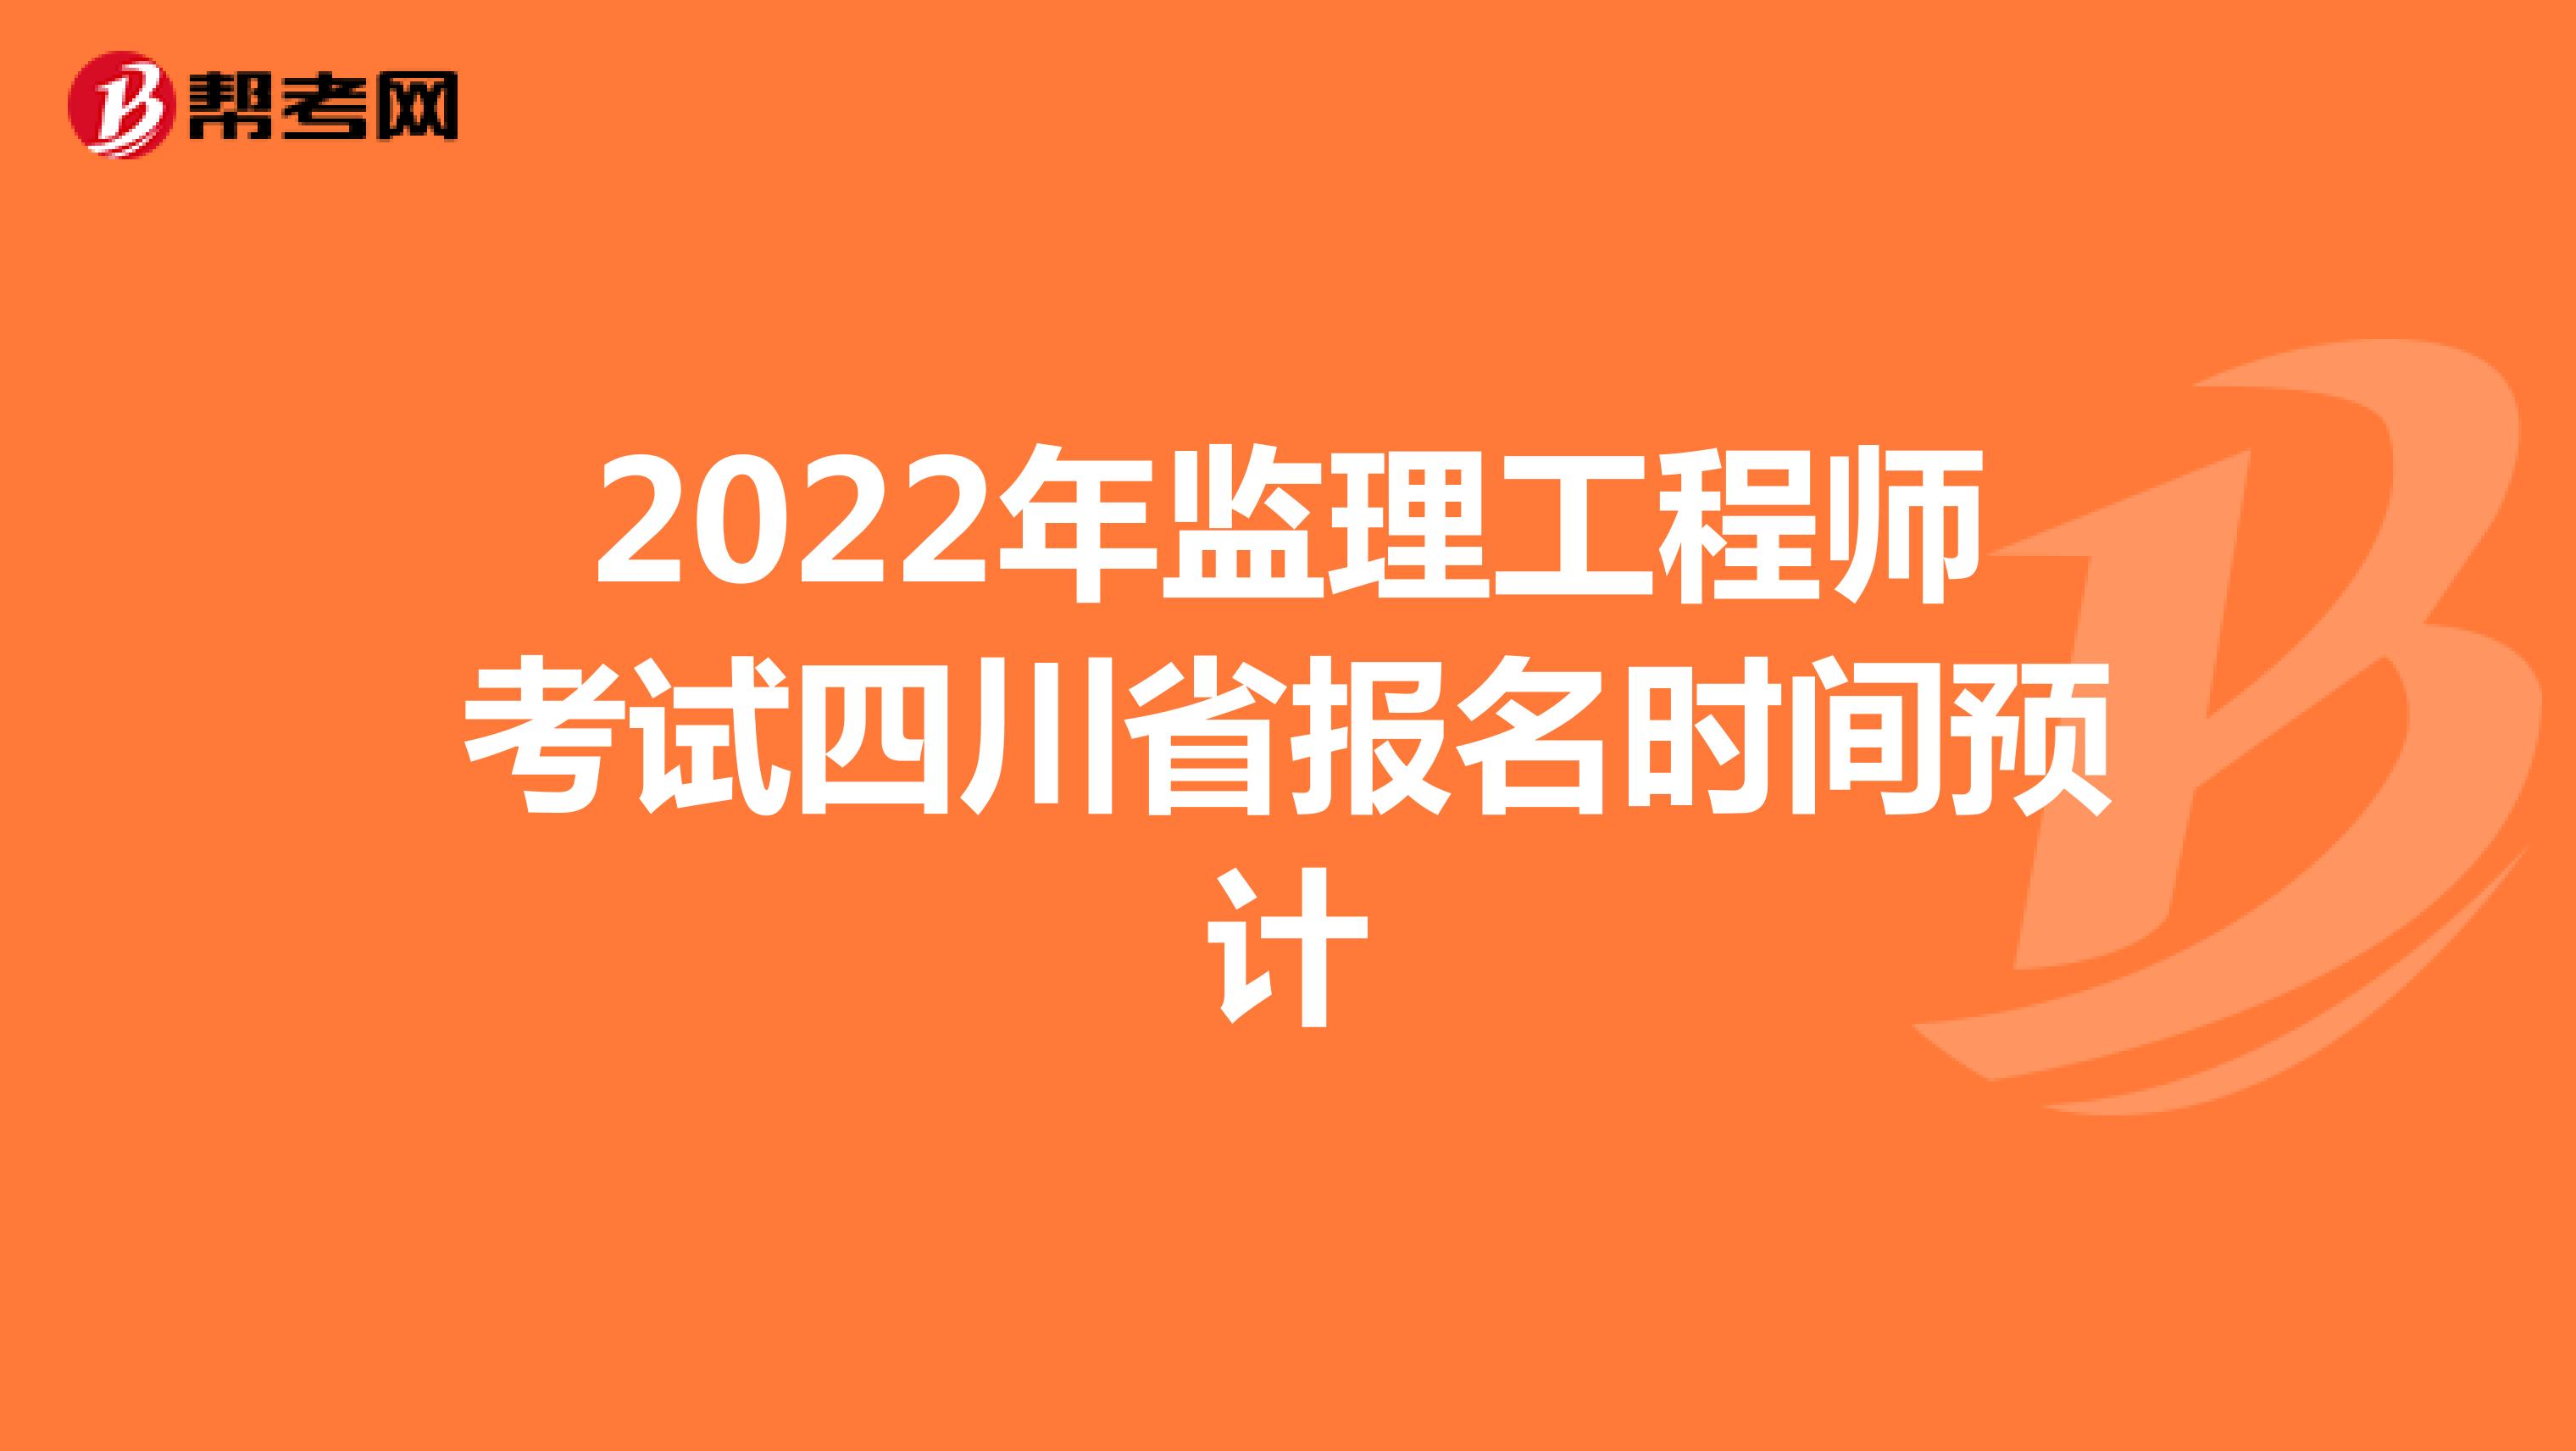 2022年监理工程师考试四川省报名时间预计